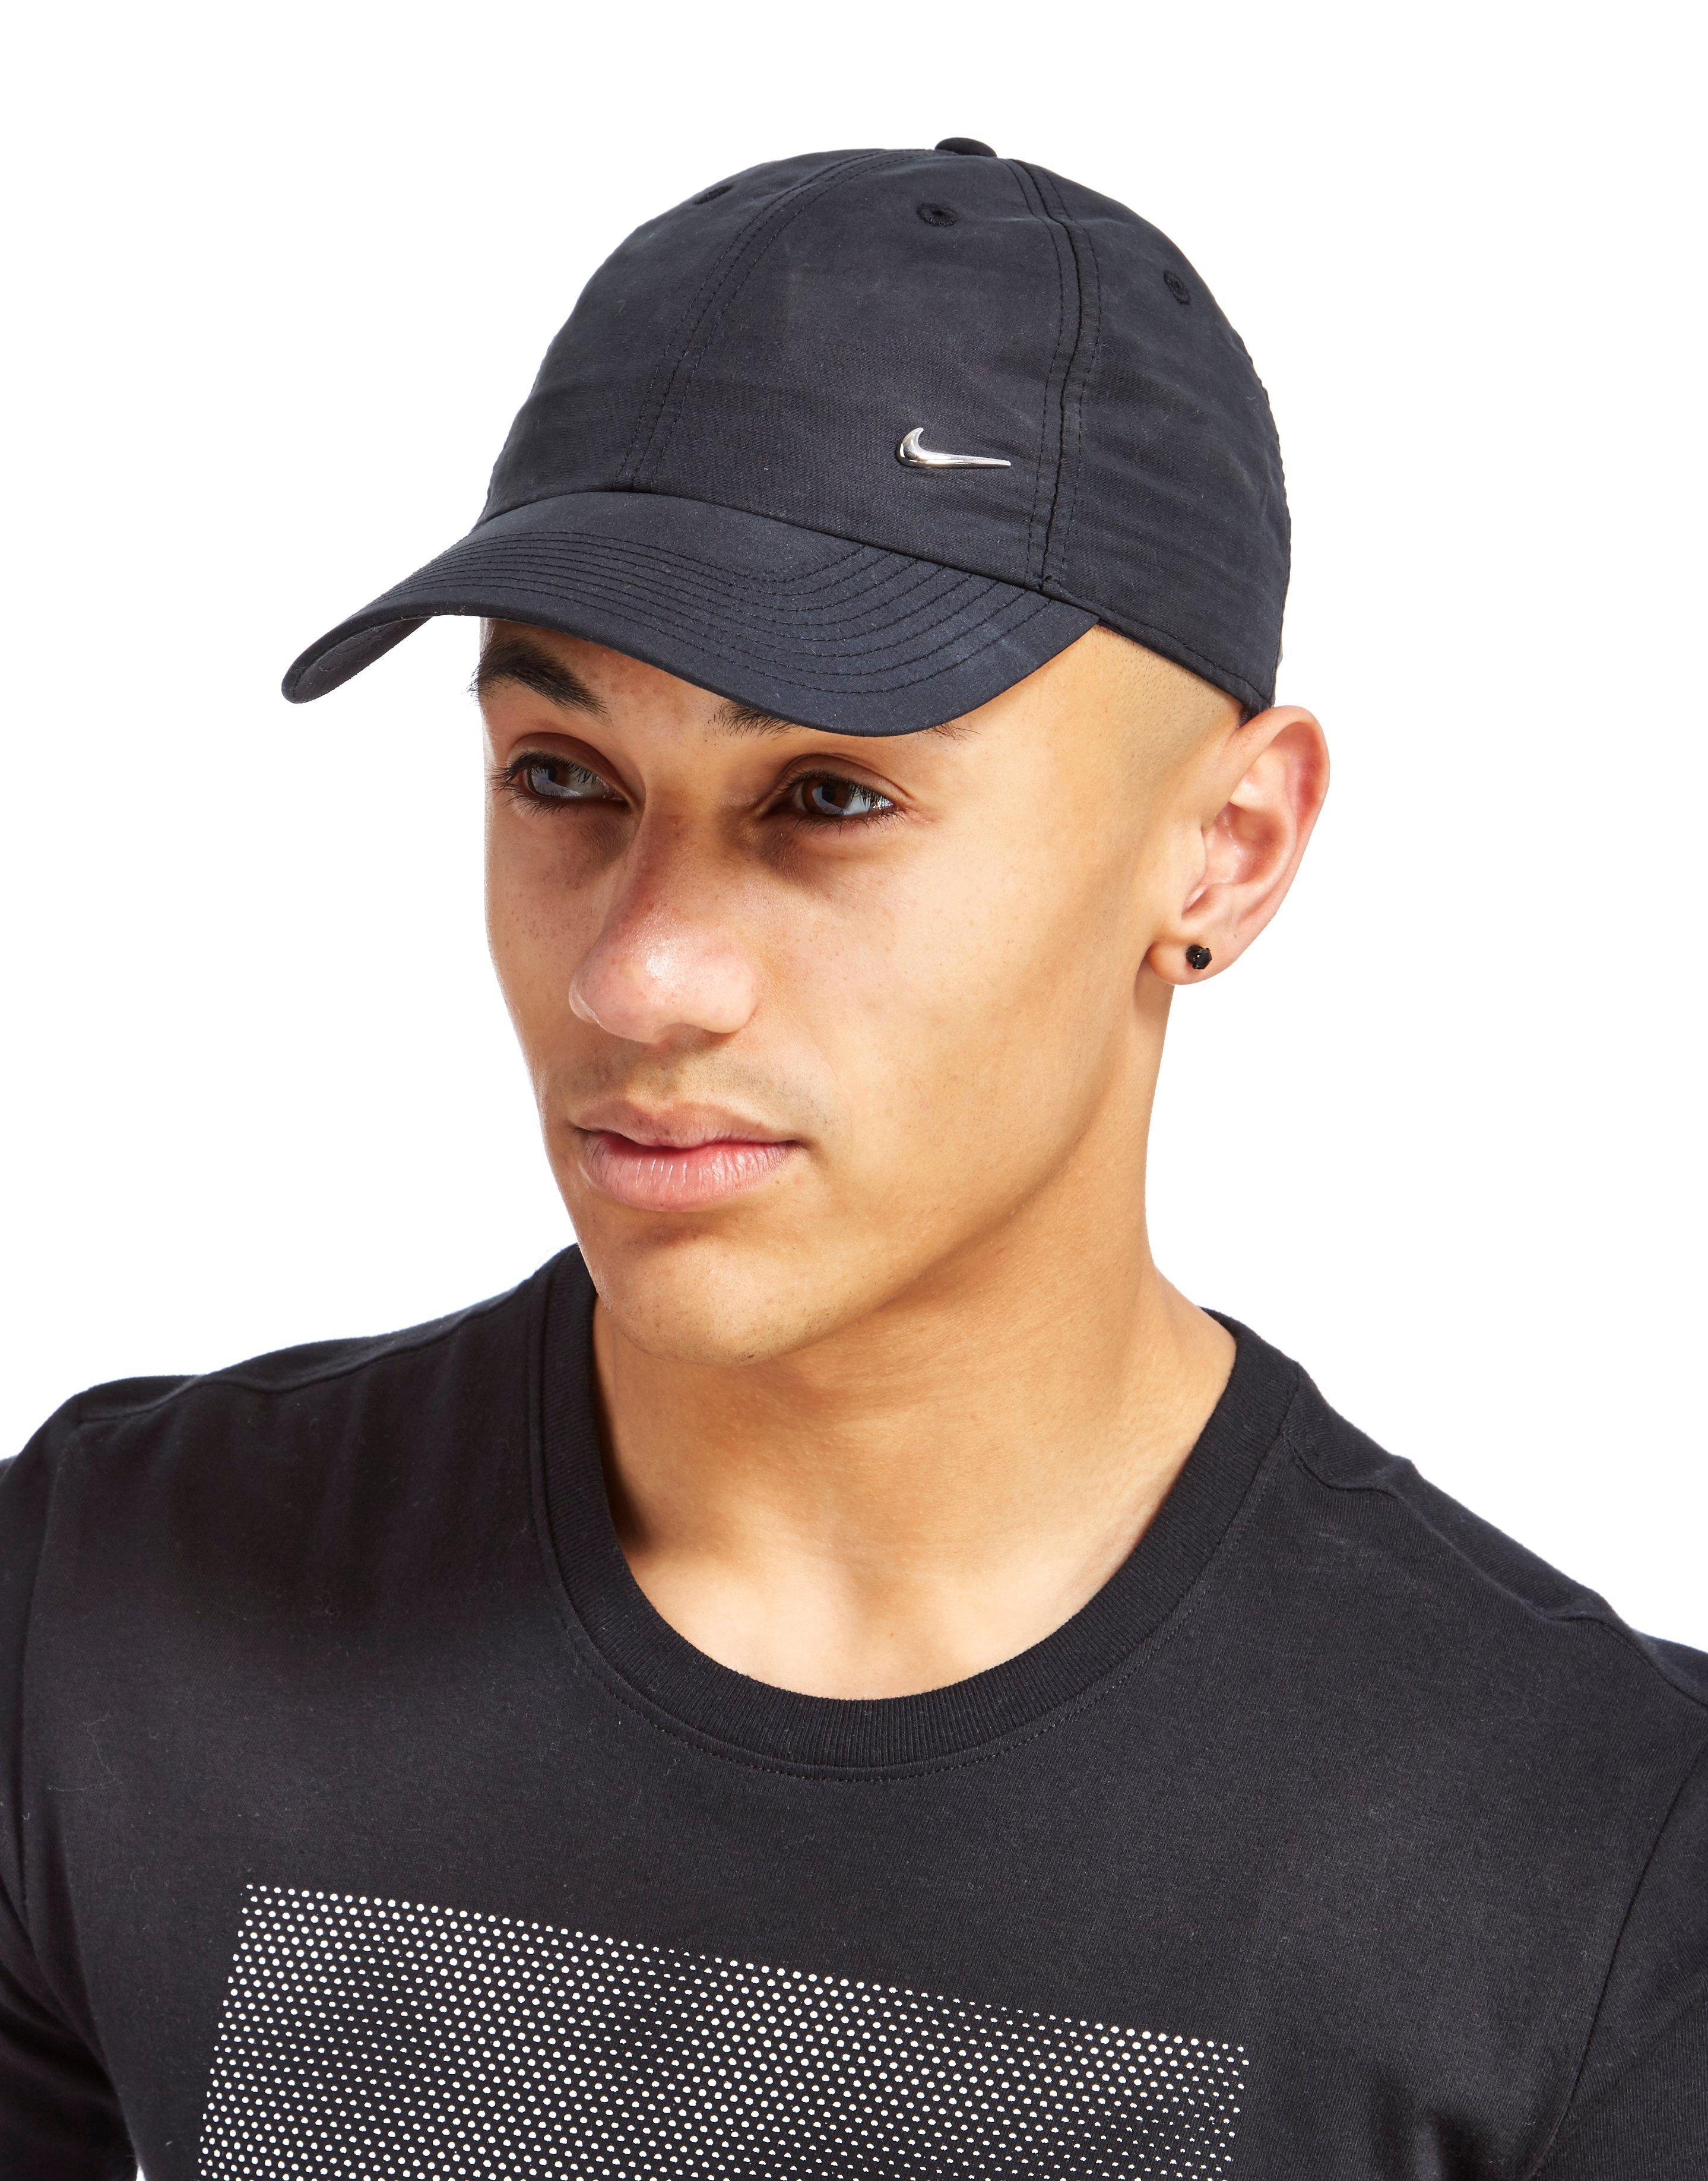 Nike Synthetic Side Swoosh Cap in Black/Silver (Black) for Men - Lyst